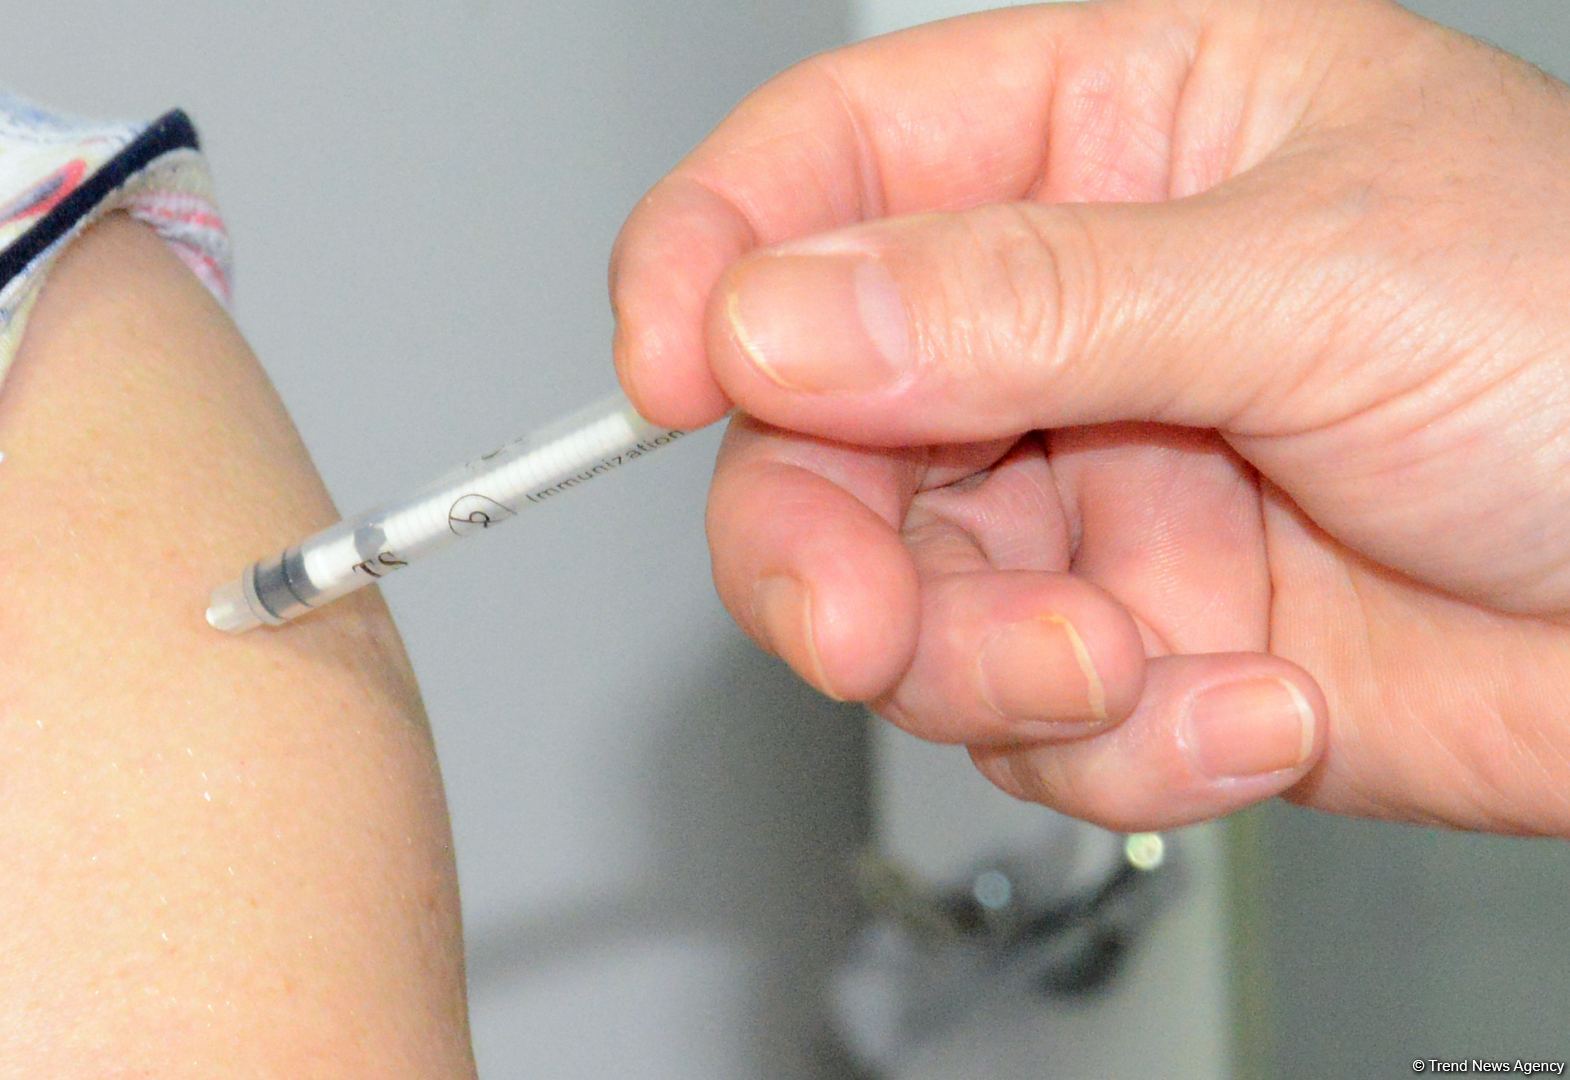 Dünyada vaksindən ölüm faktı qeydə alınmayıb - Baş infeksionist